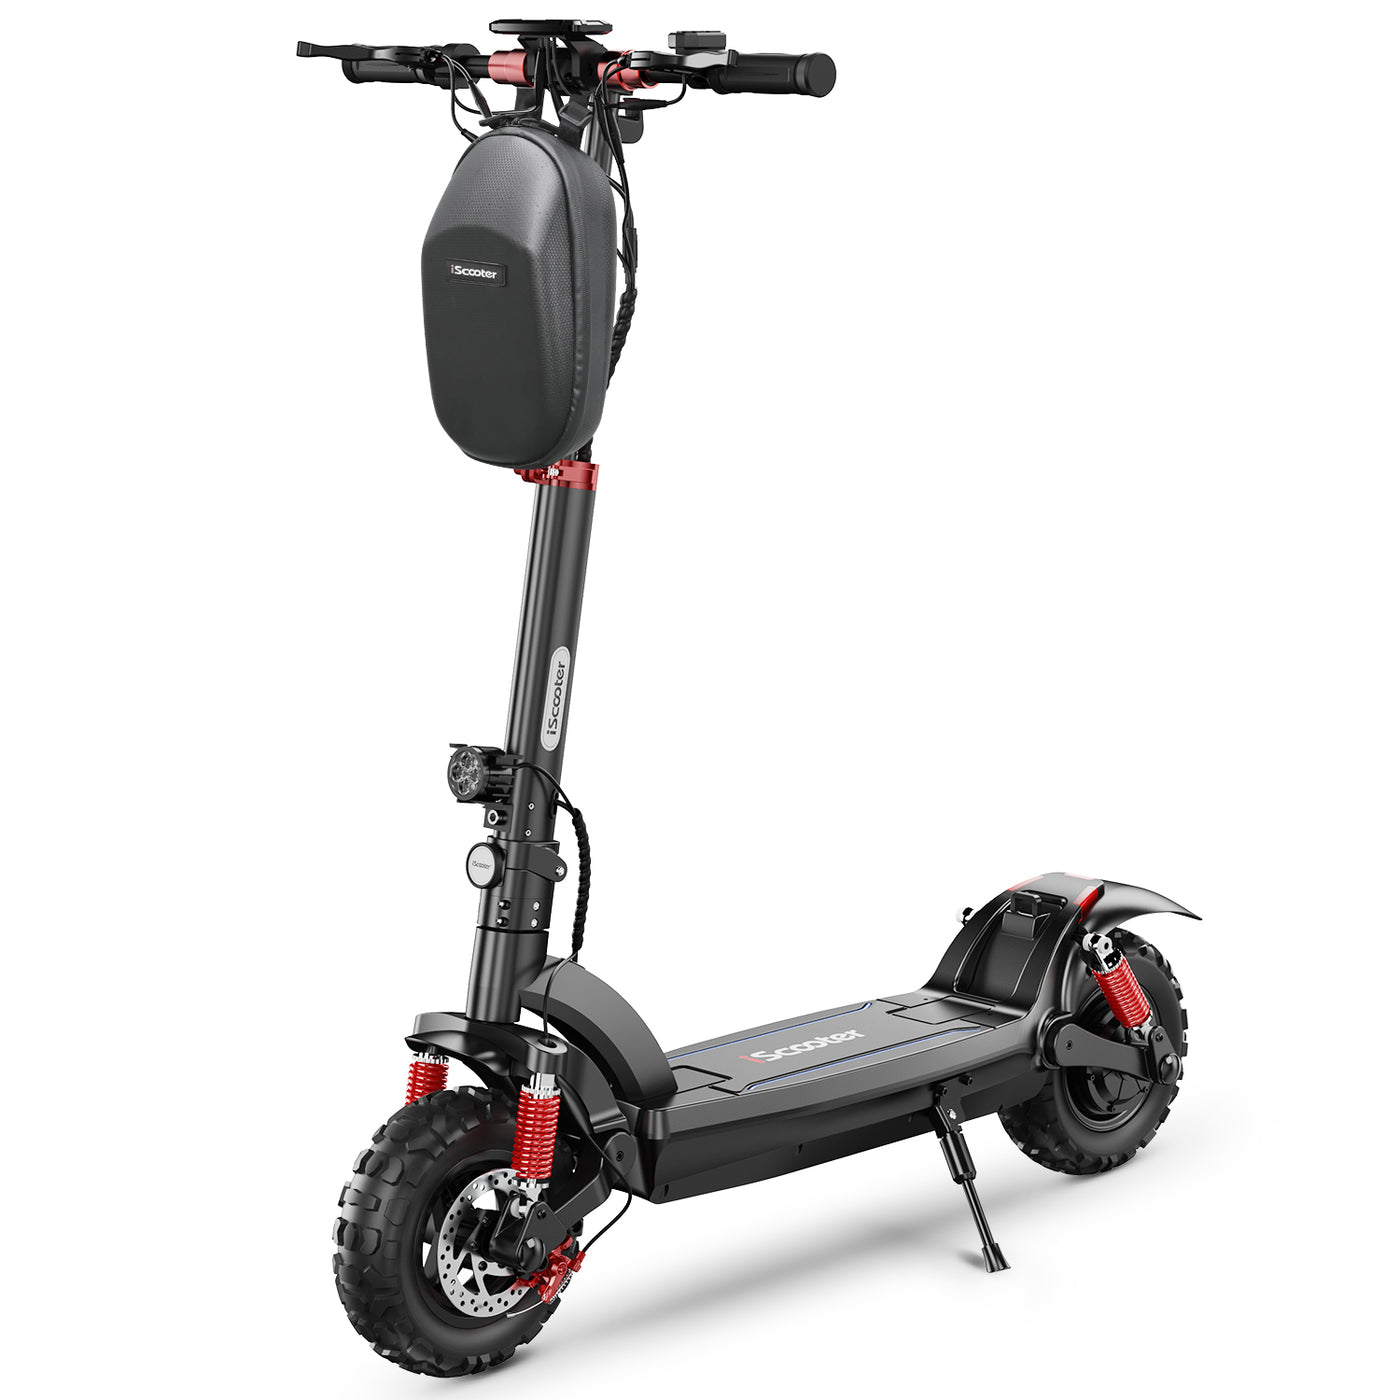 Scooter de moto électrique intelligent à roue unique, sensation de